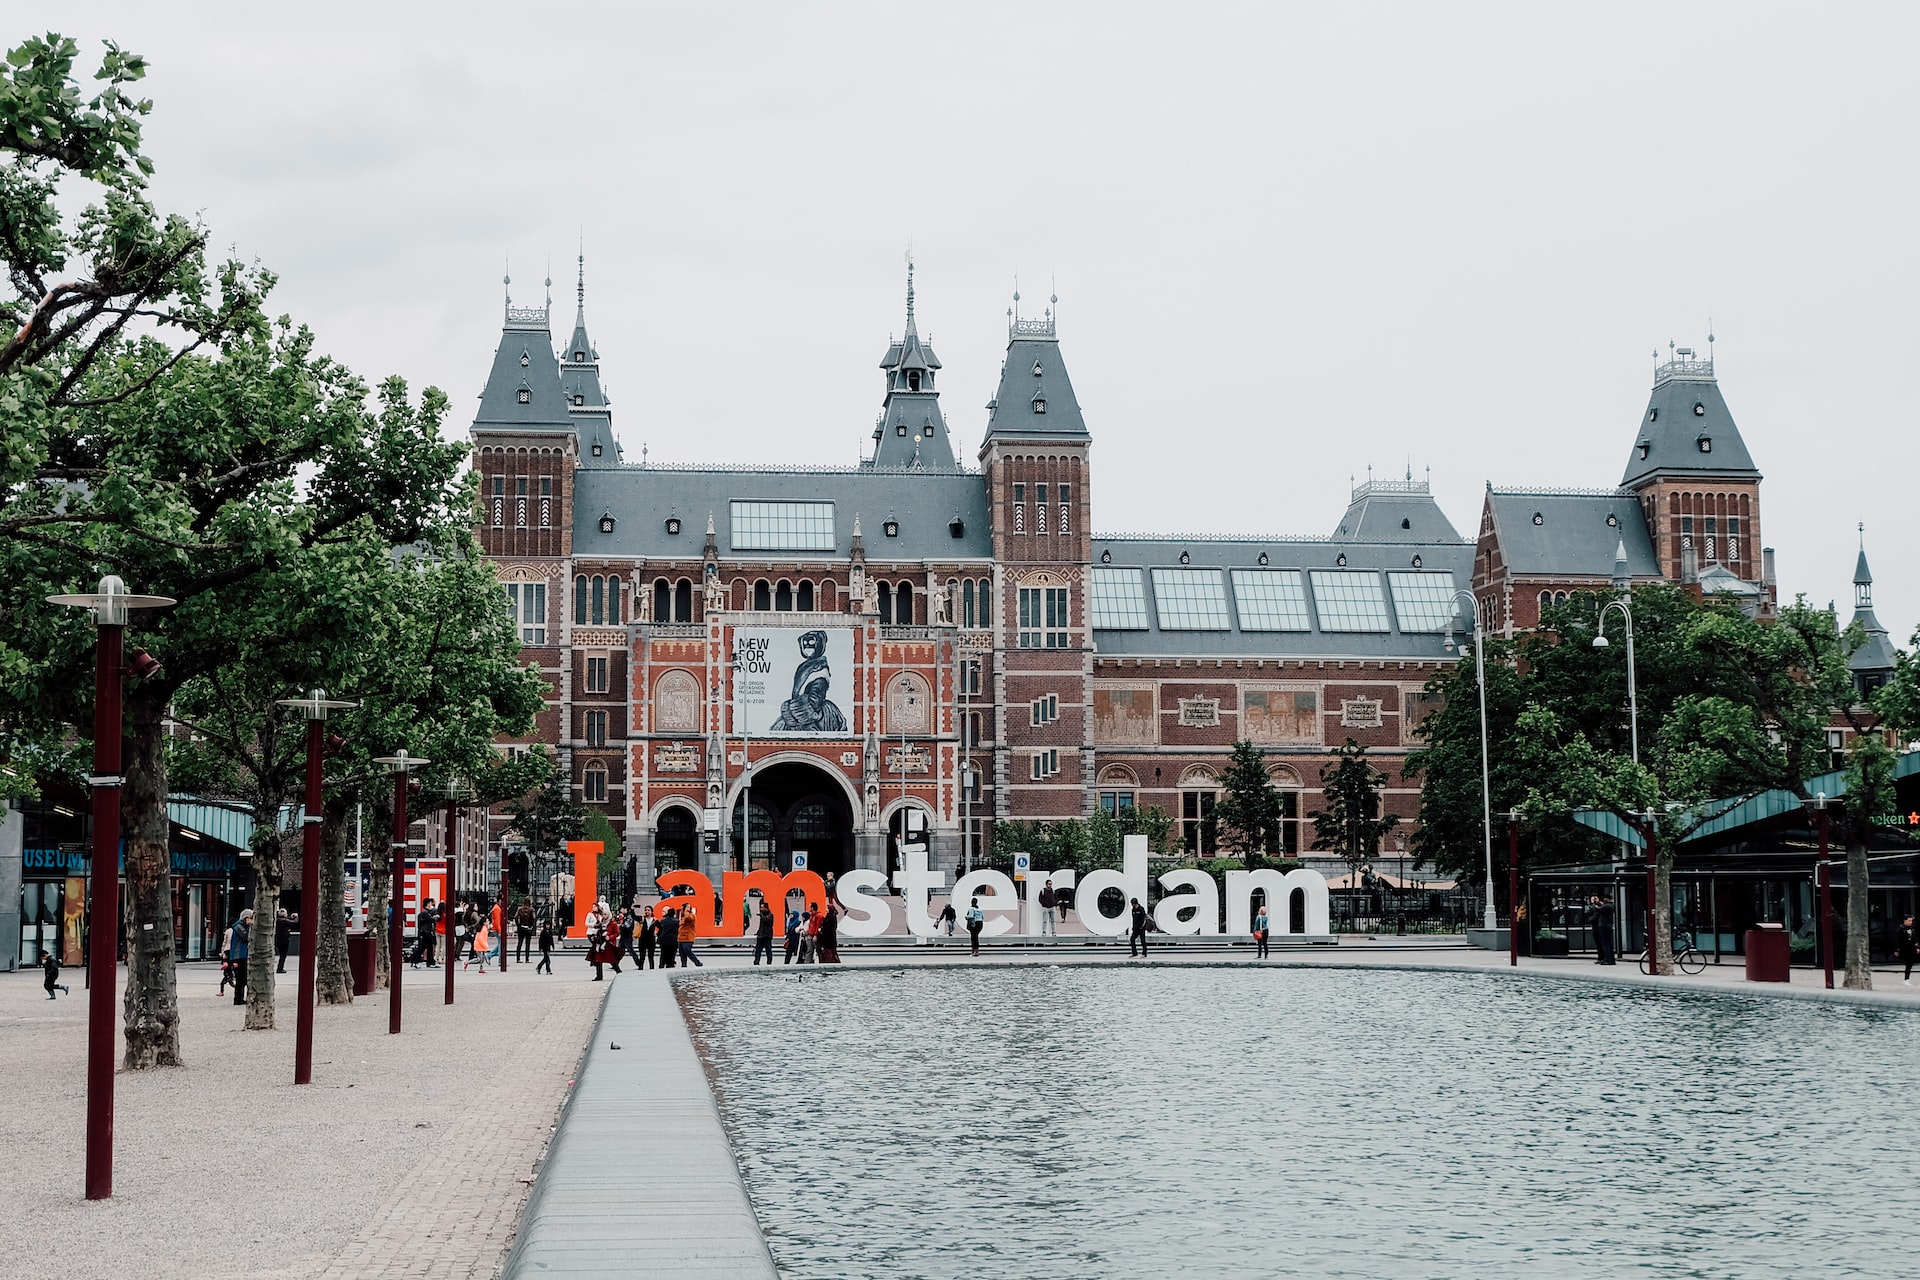 Toeristische topbestemmingen in Nederland - Amsterdam museum